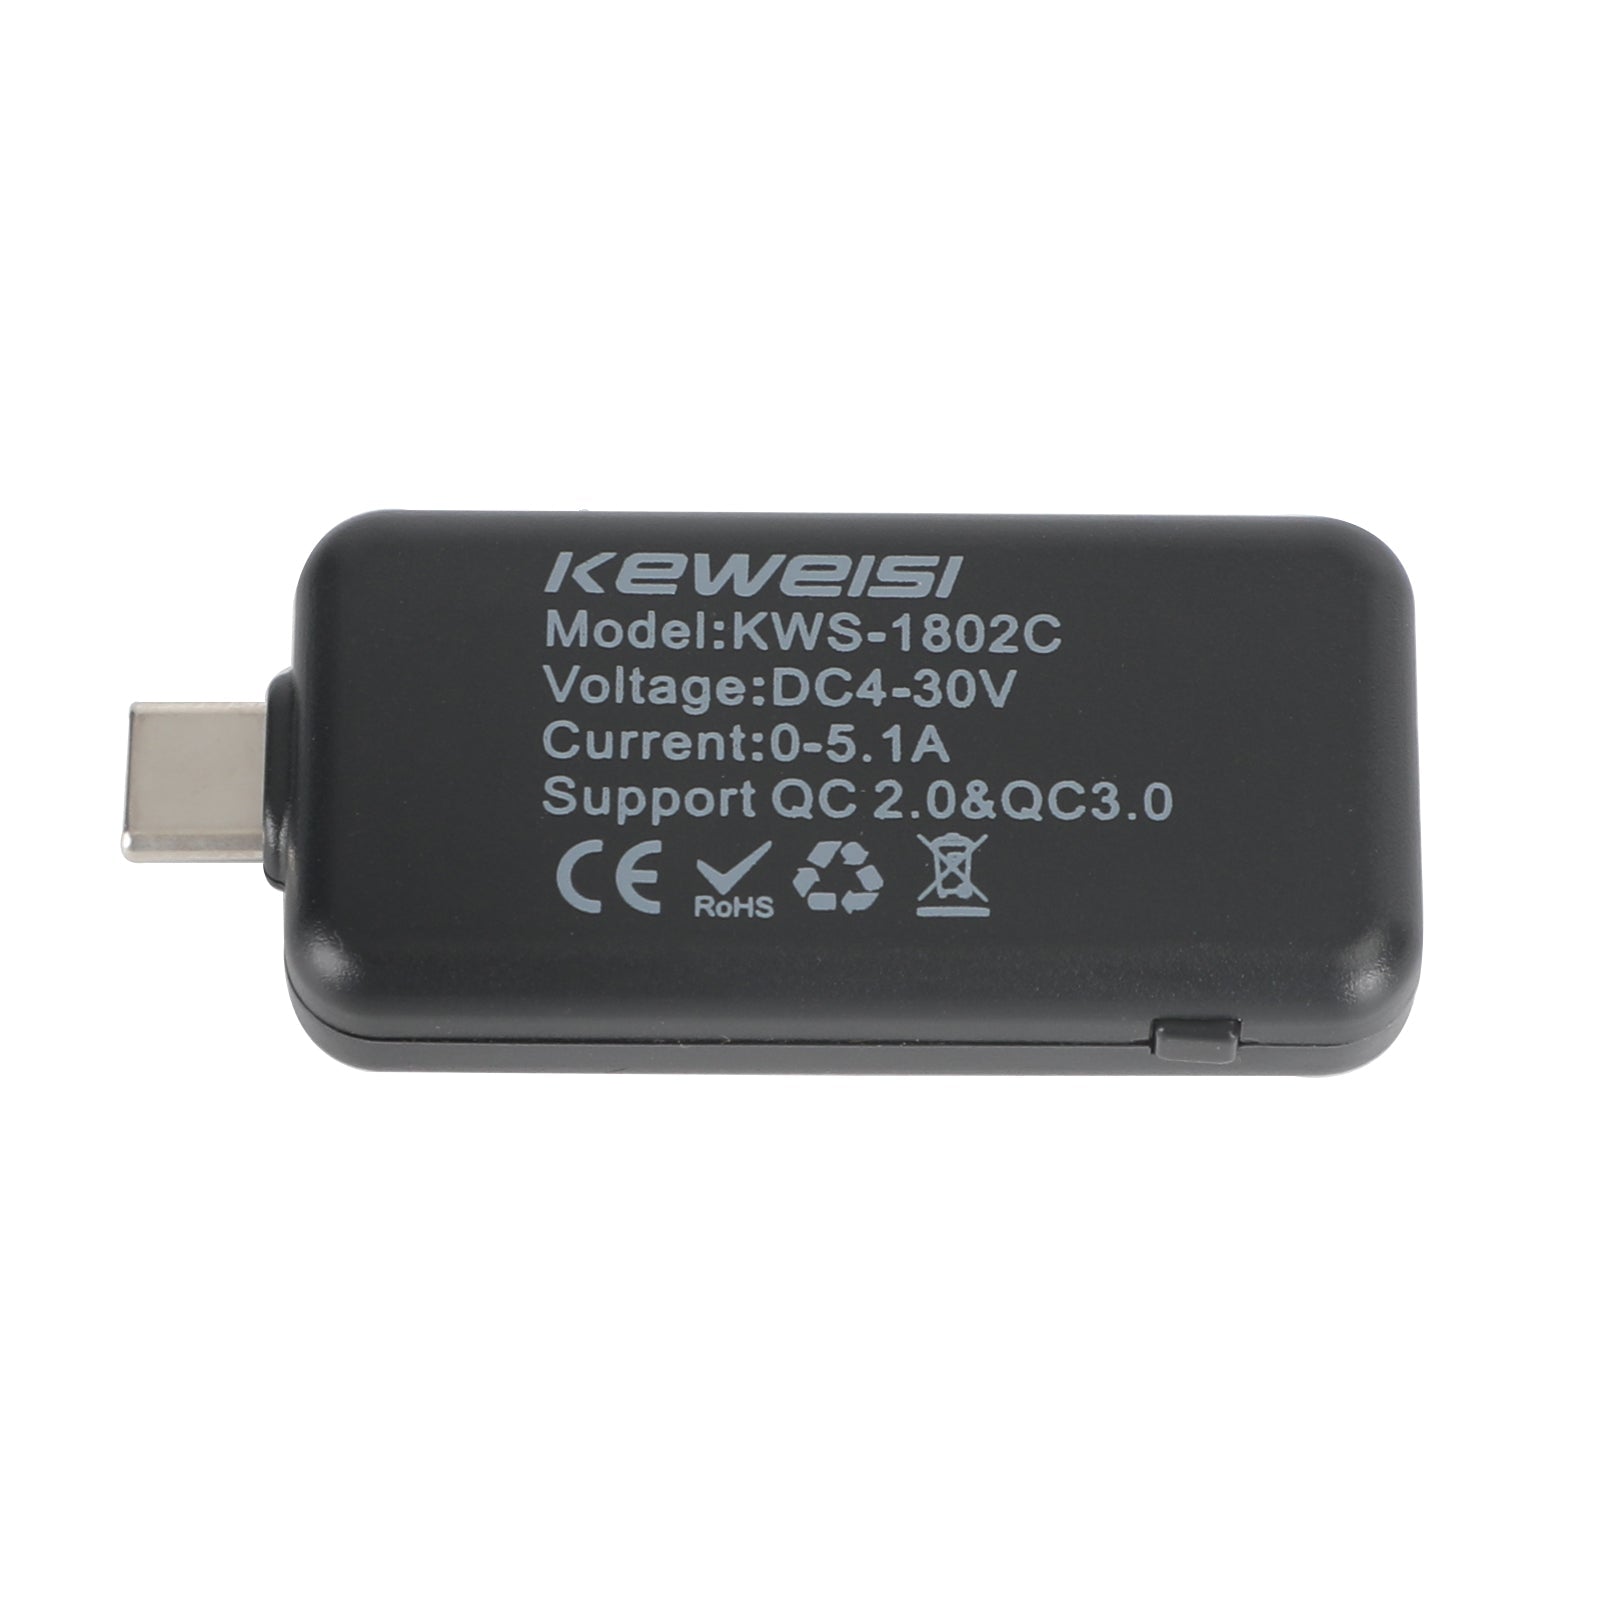 Probador USB tipo C LCD Voltaje actual Capacidad del cargador Monitor Medidor de tiempo de potencia